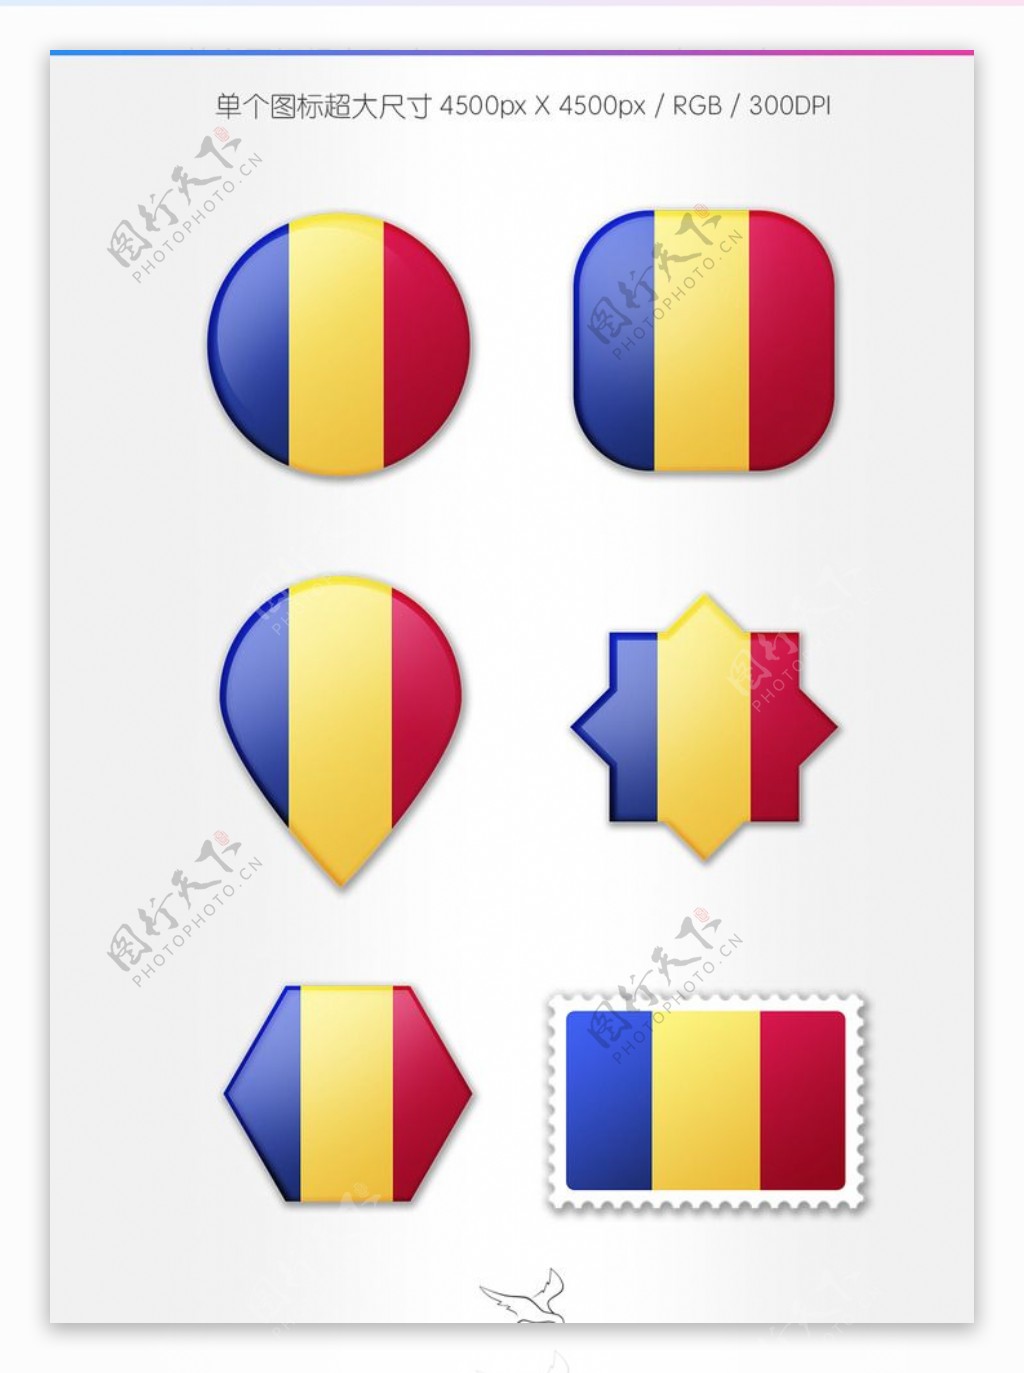 罗马尼亚国旗图标